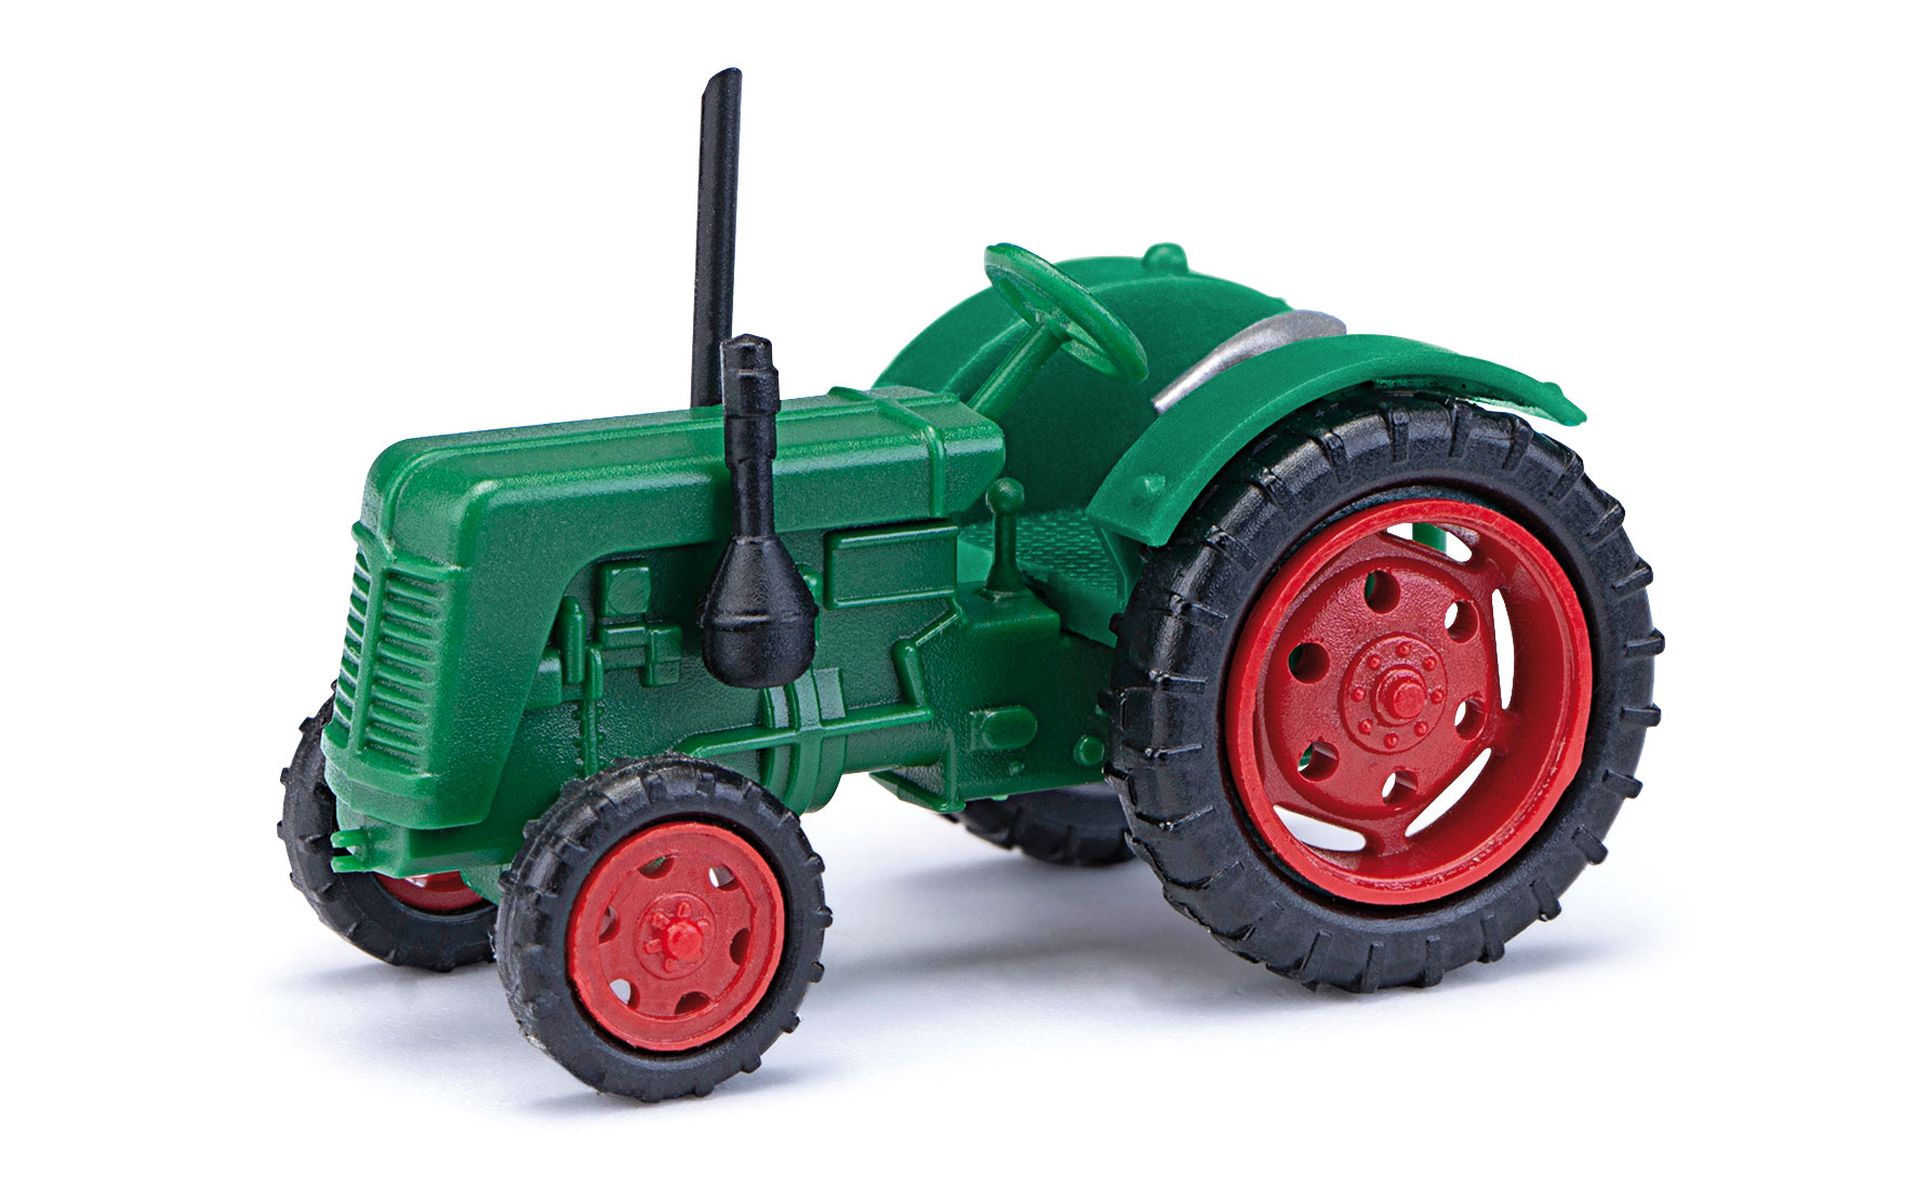 Busch 211006810 - Traktor Famulus, grün